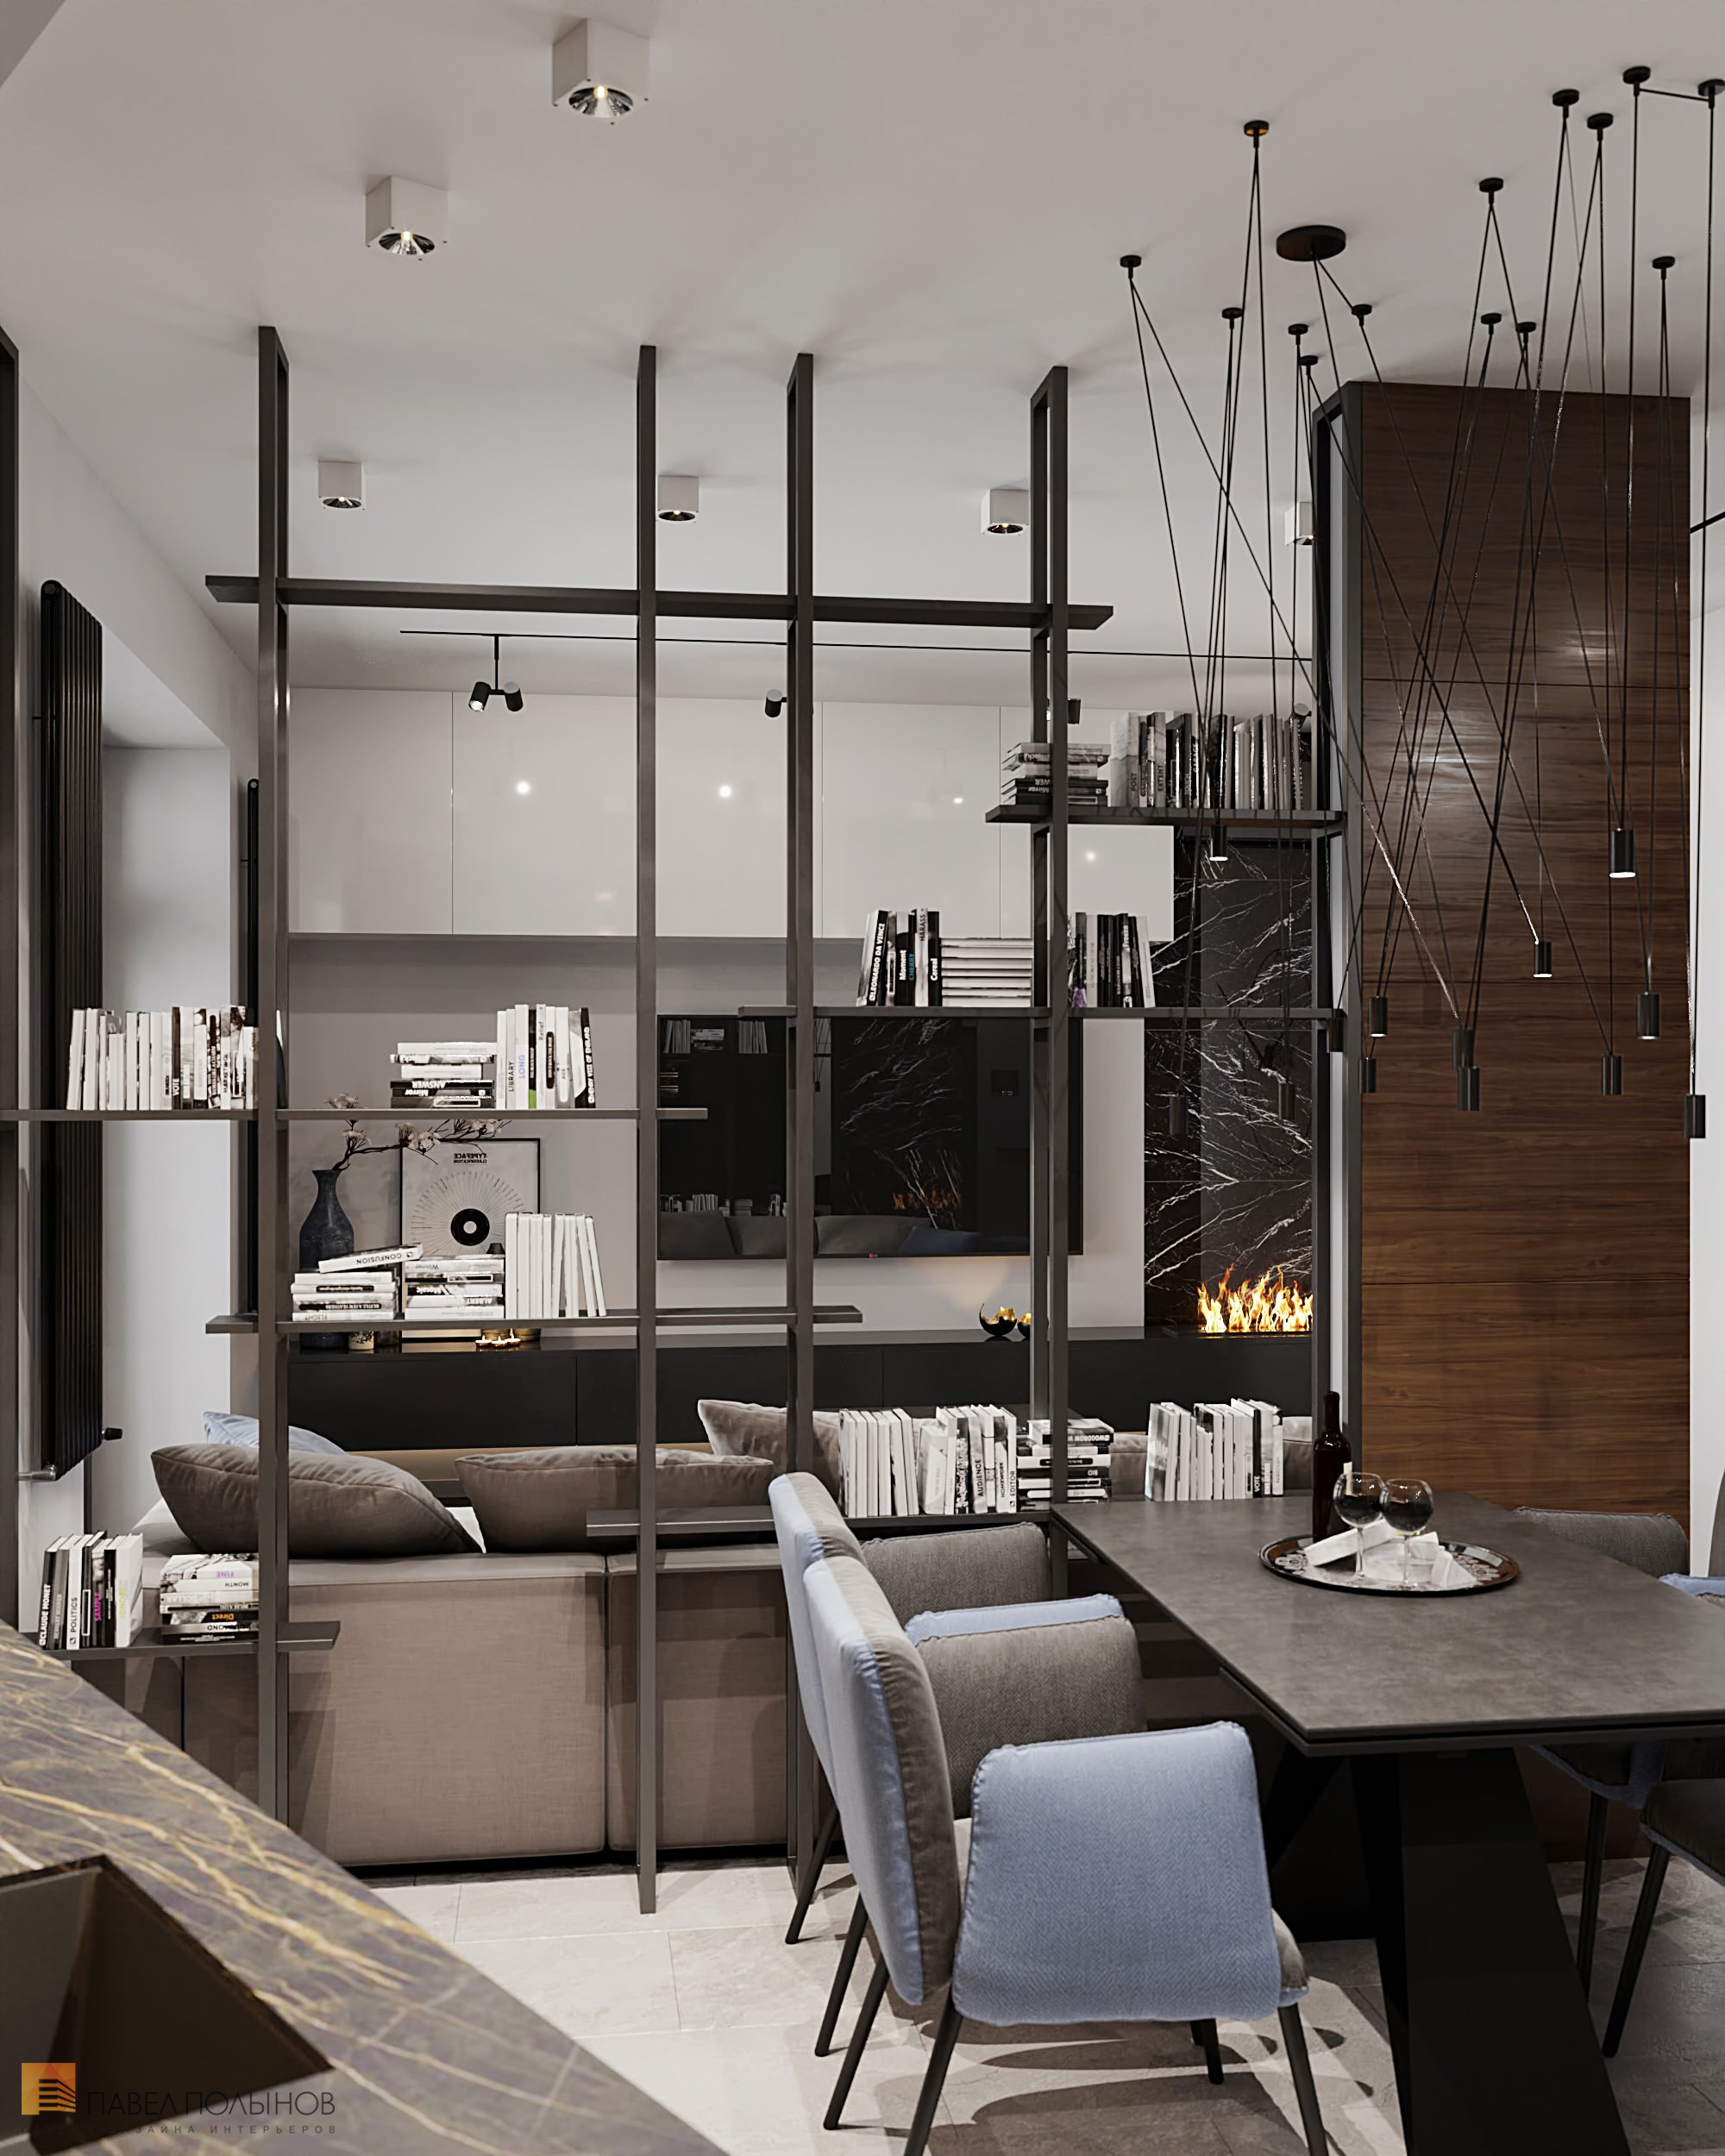 Фото дизайн интерьера кухни-гостиной из проекта «Интерьер квартиры в современном стиле, ЖК «Остров», 90 кв.м.»